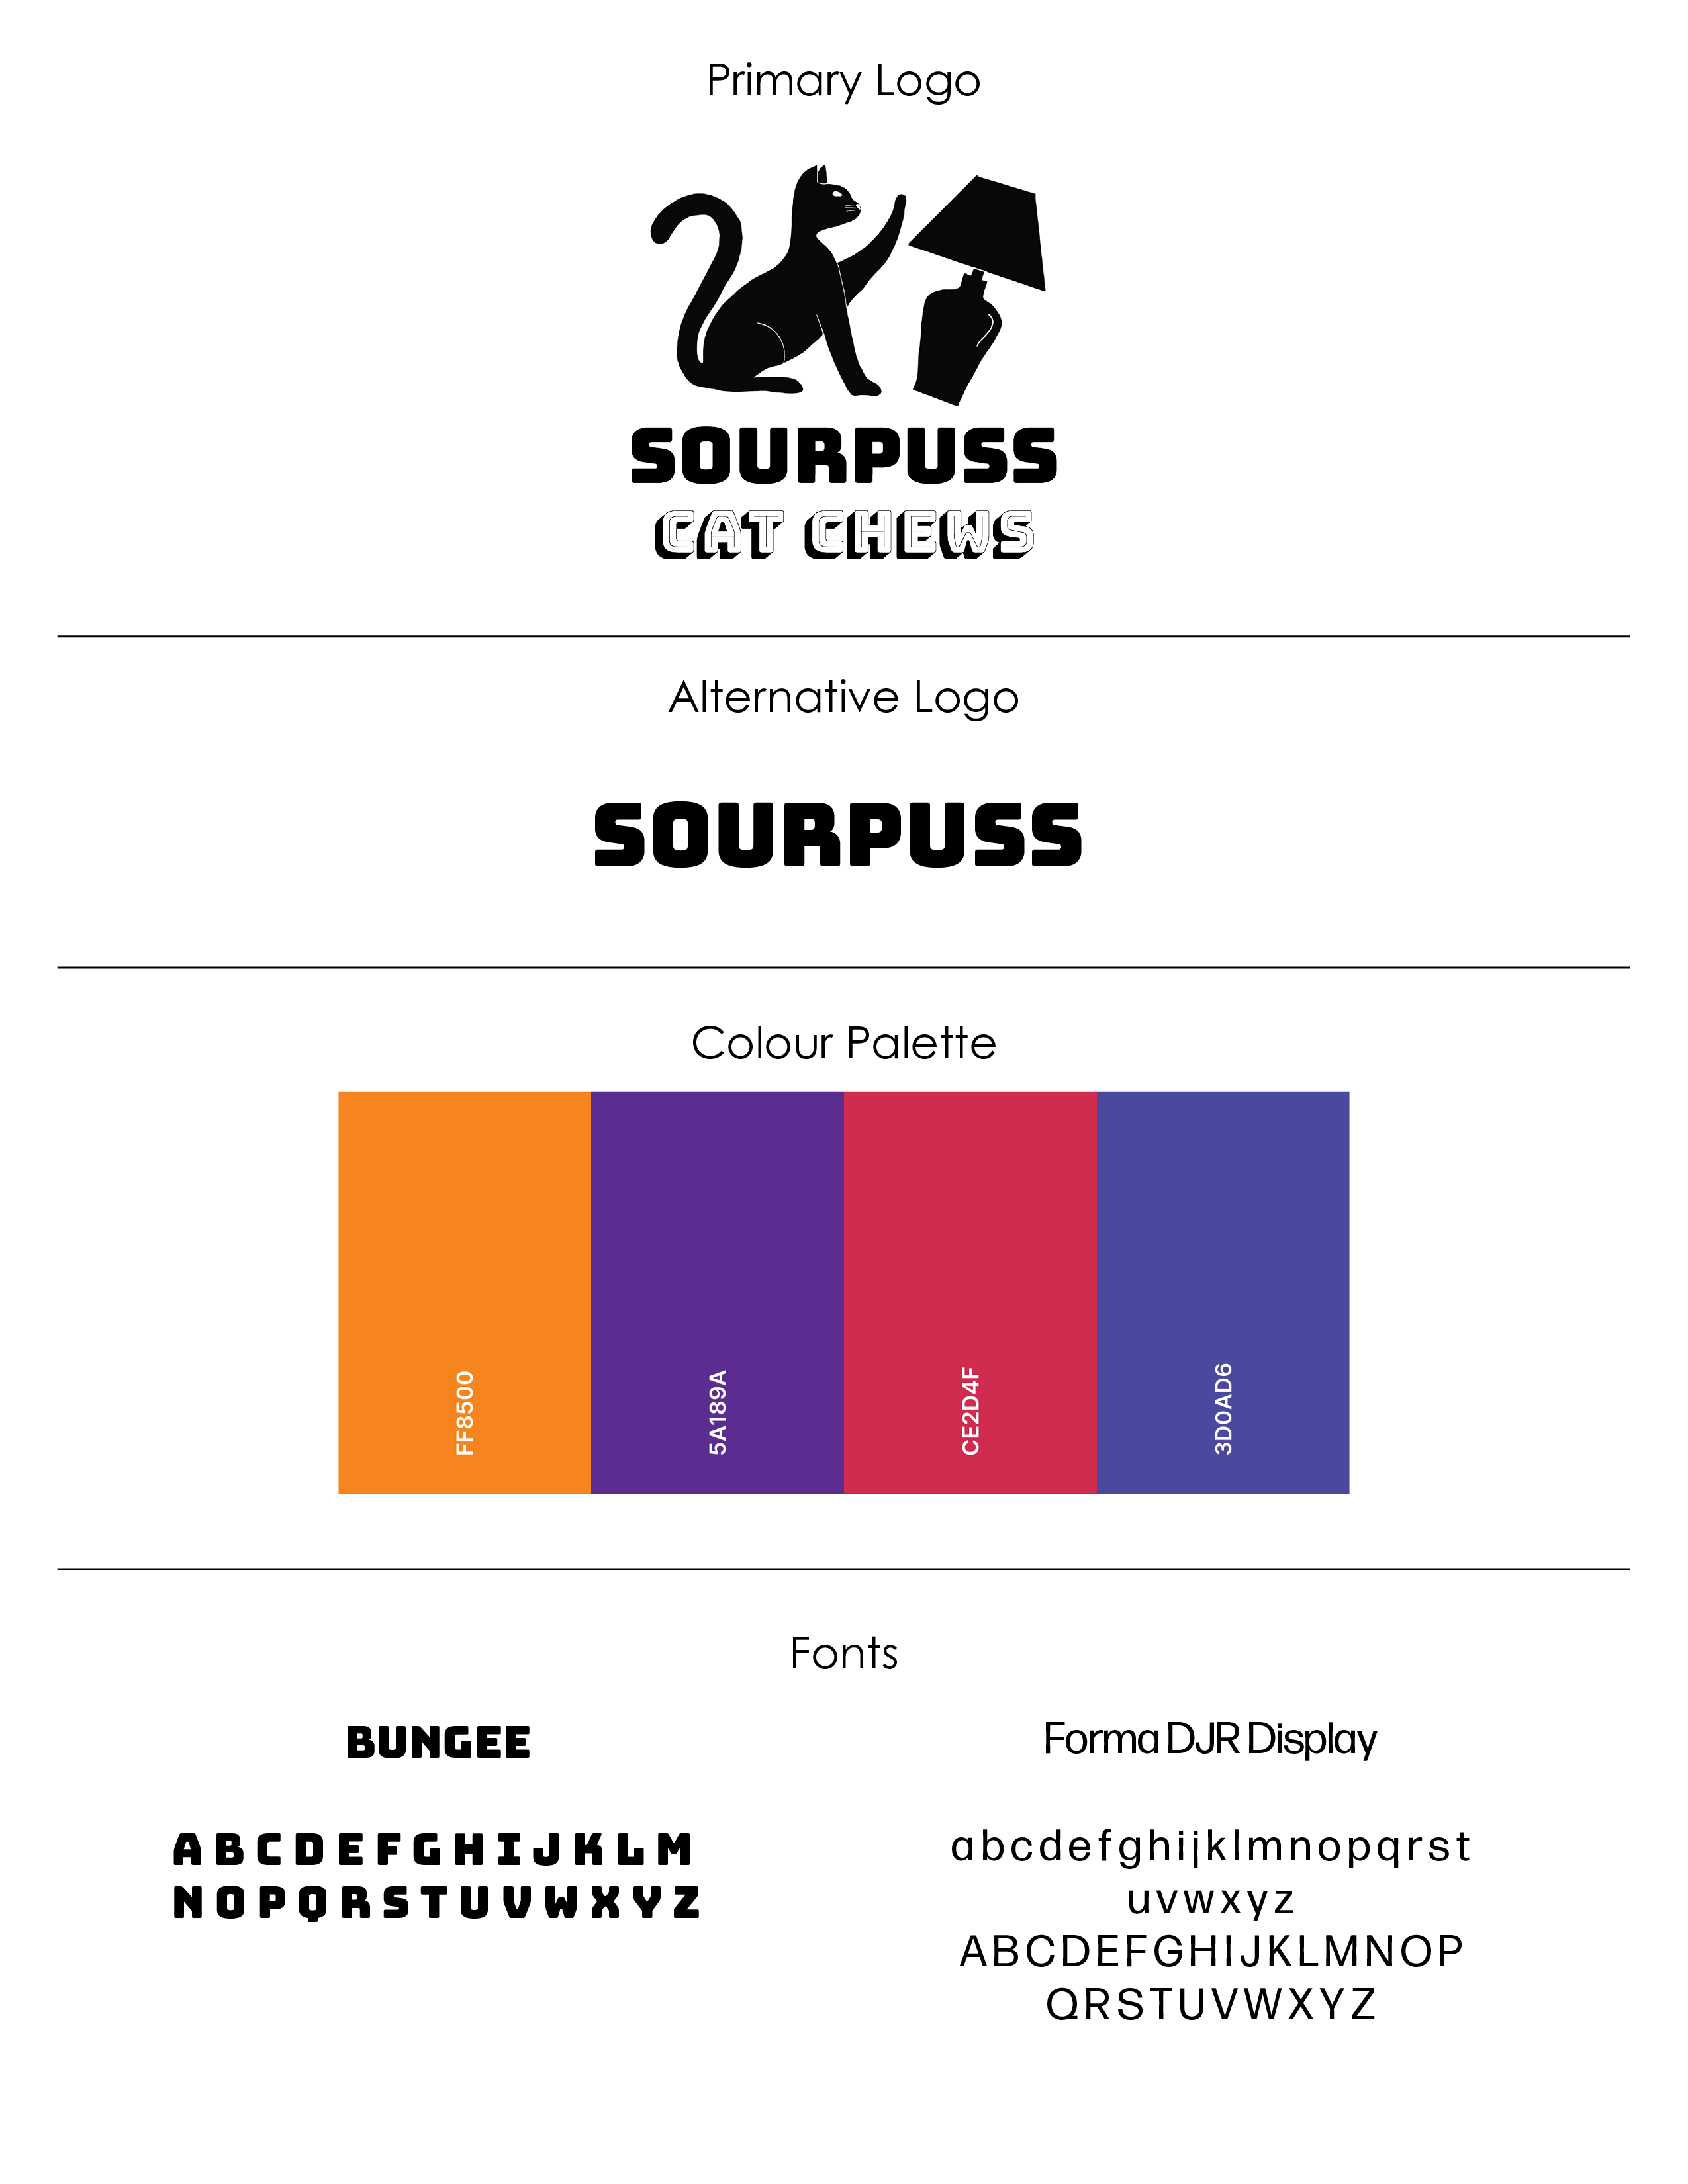 Sourpuss Cat Chews